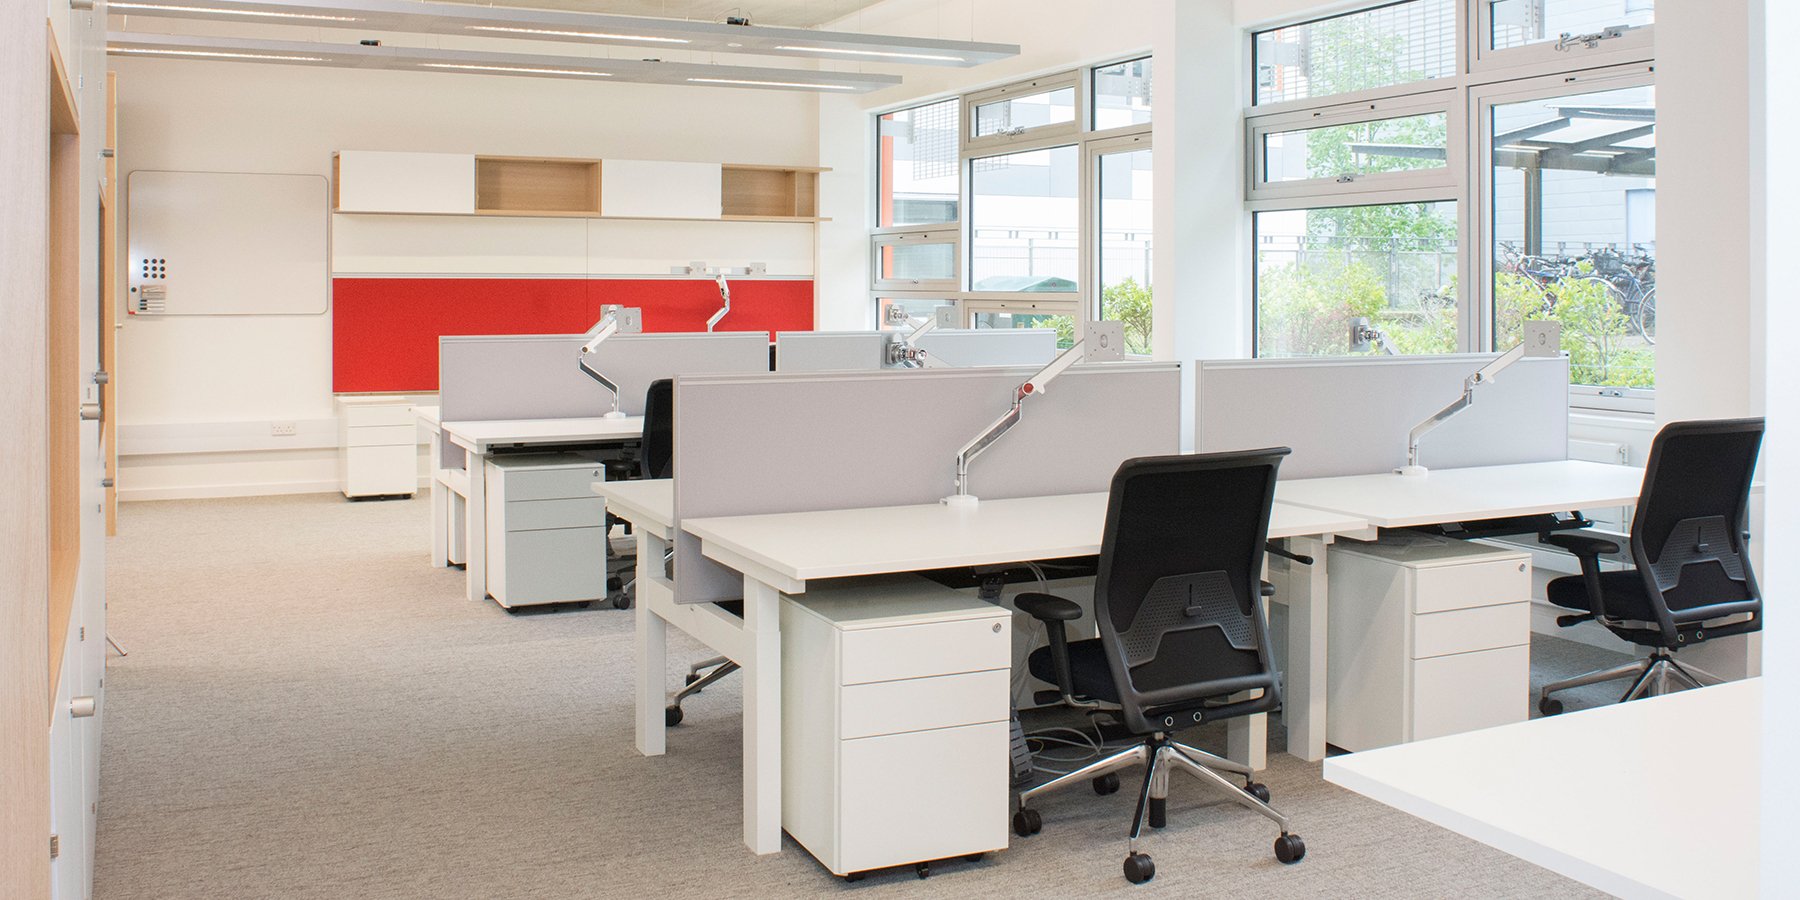 office, office interior design, chairs, desks, workspace plan, office staff